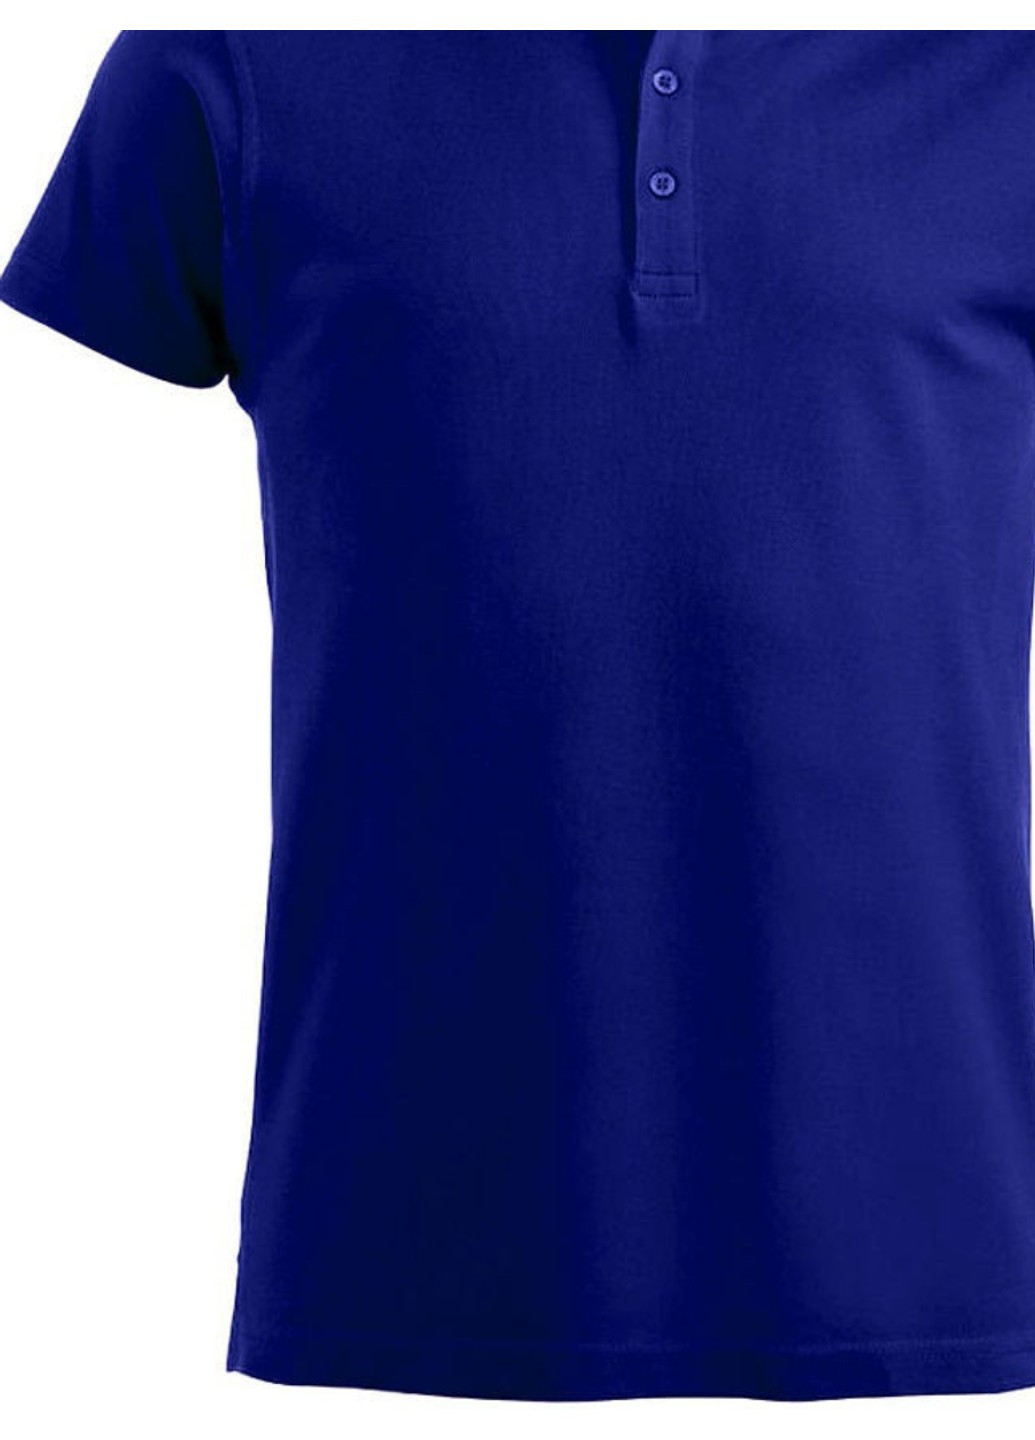 Синяя летняя футболка женская polo style gibson синего цвета Clique